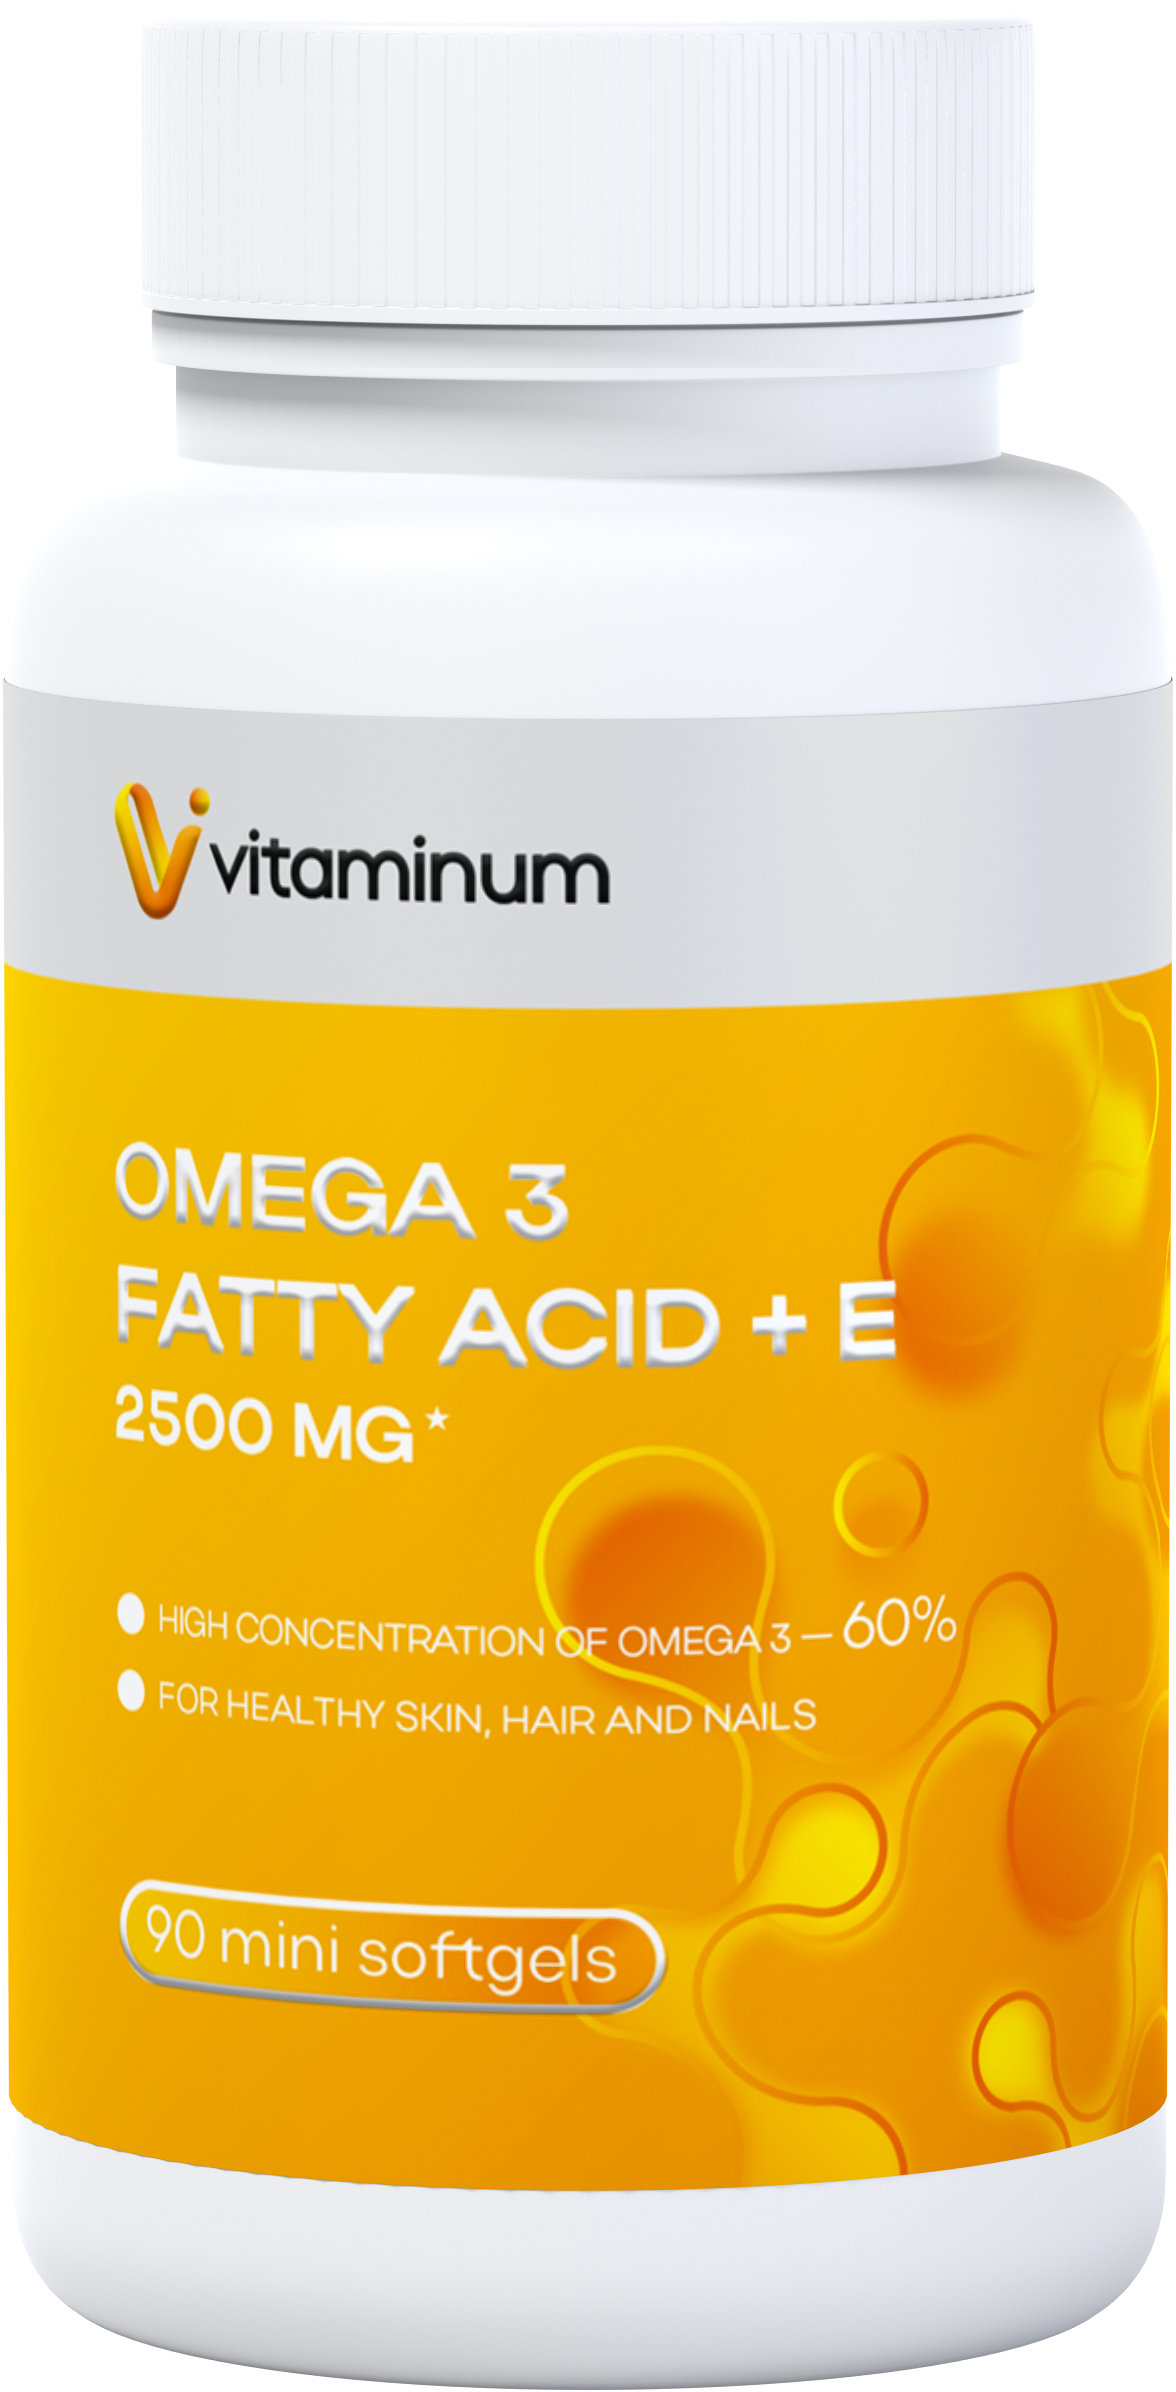  Vitaminum ОМЕГА 3 60% + витамин Е (2500 MG*) 90 капсул 700 мг   в Туапсе